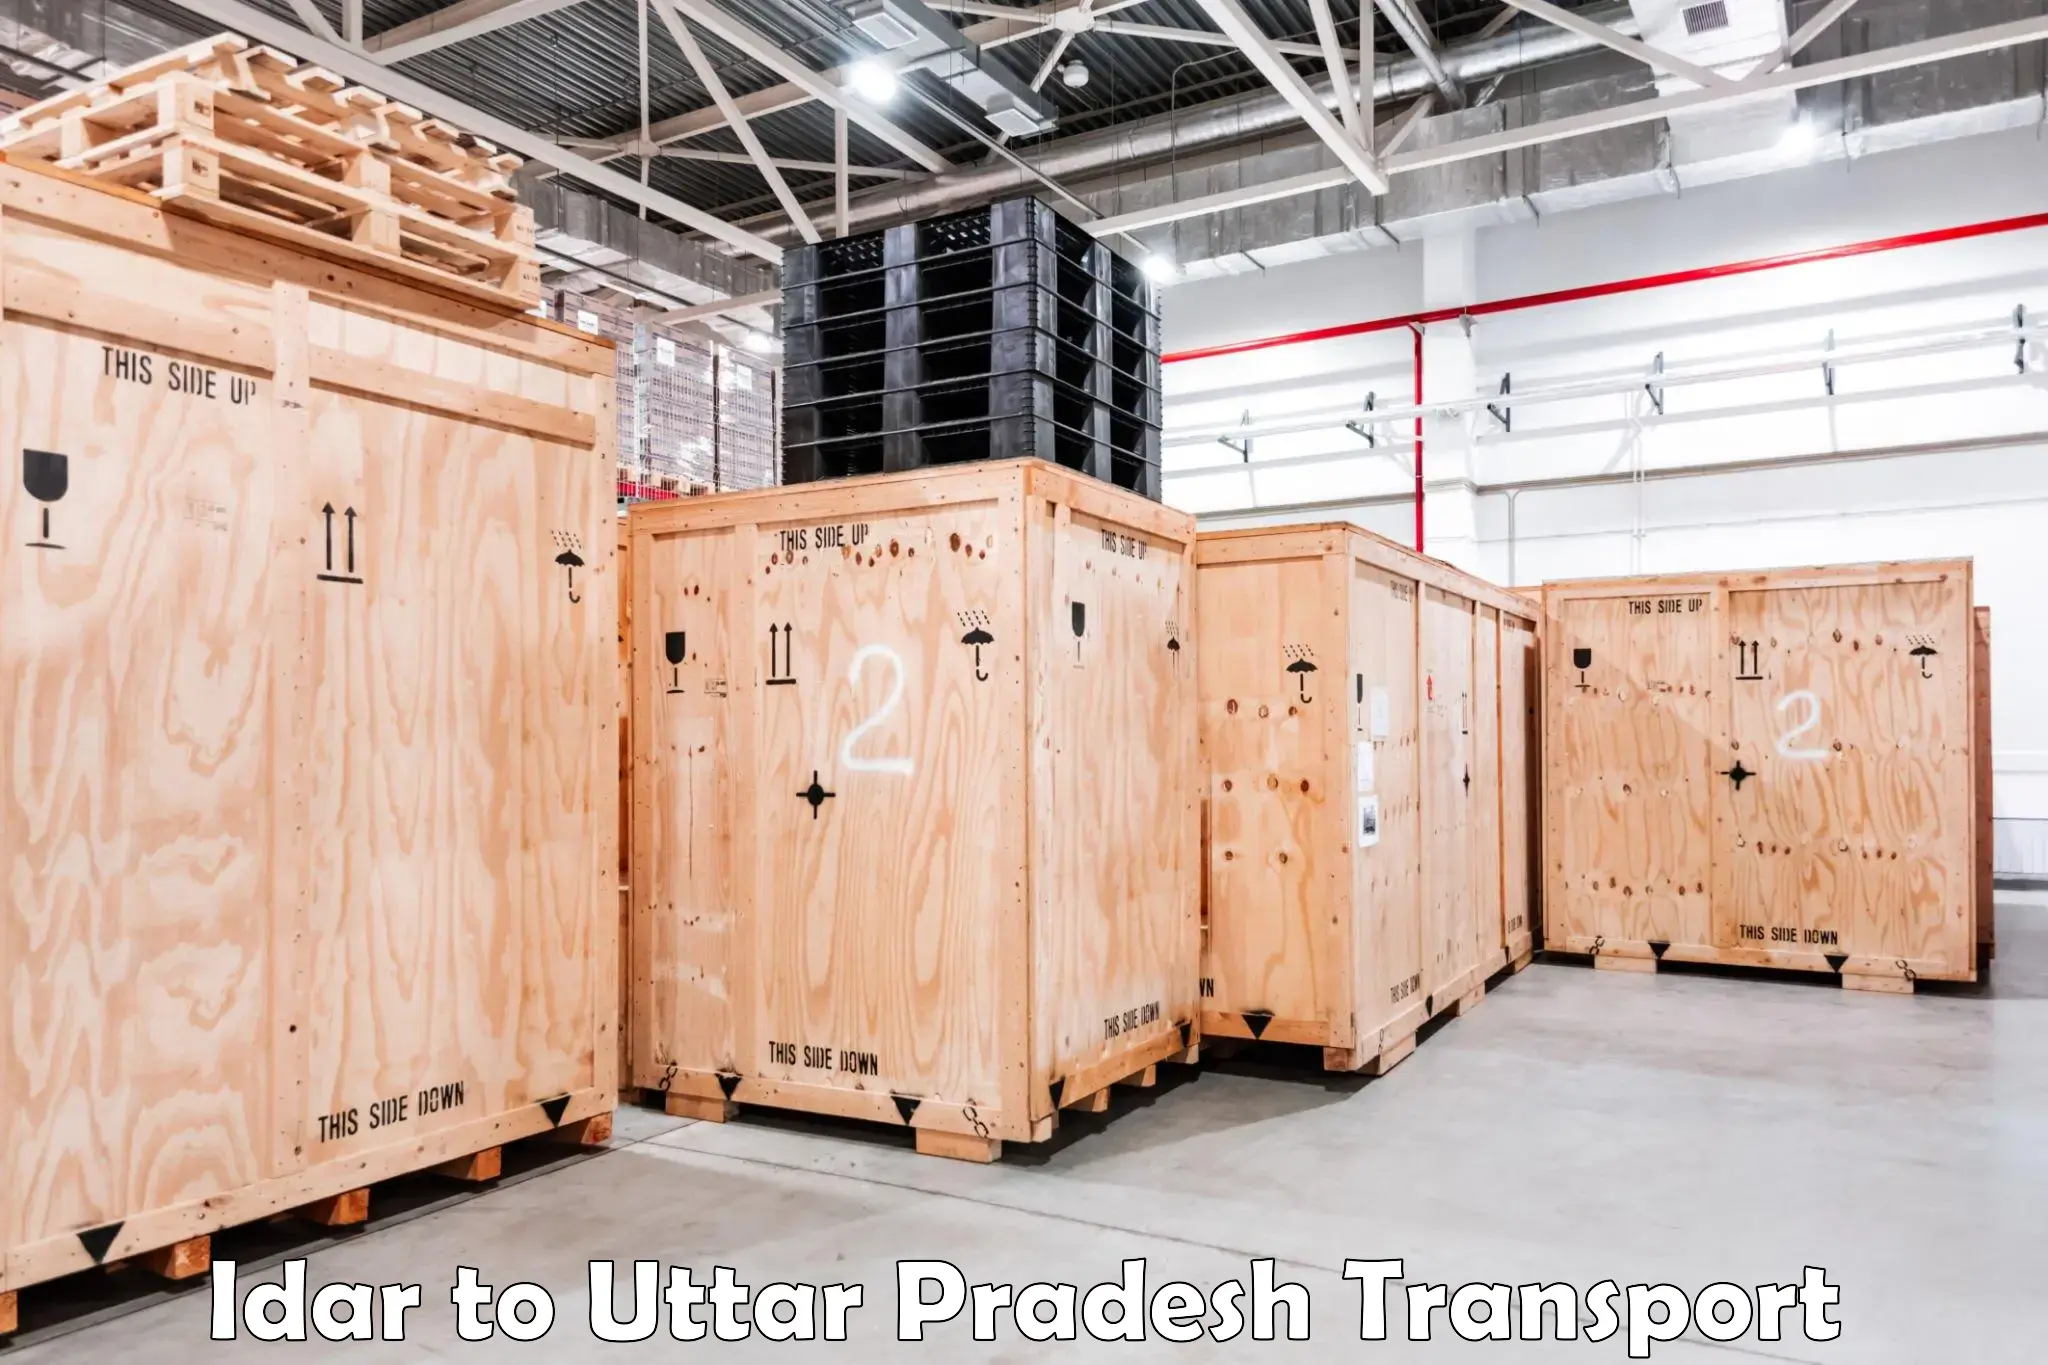 Two wheeler parcel service Idar to Dadri